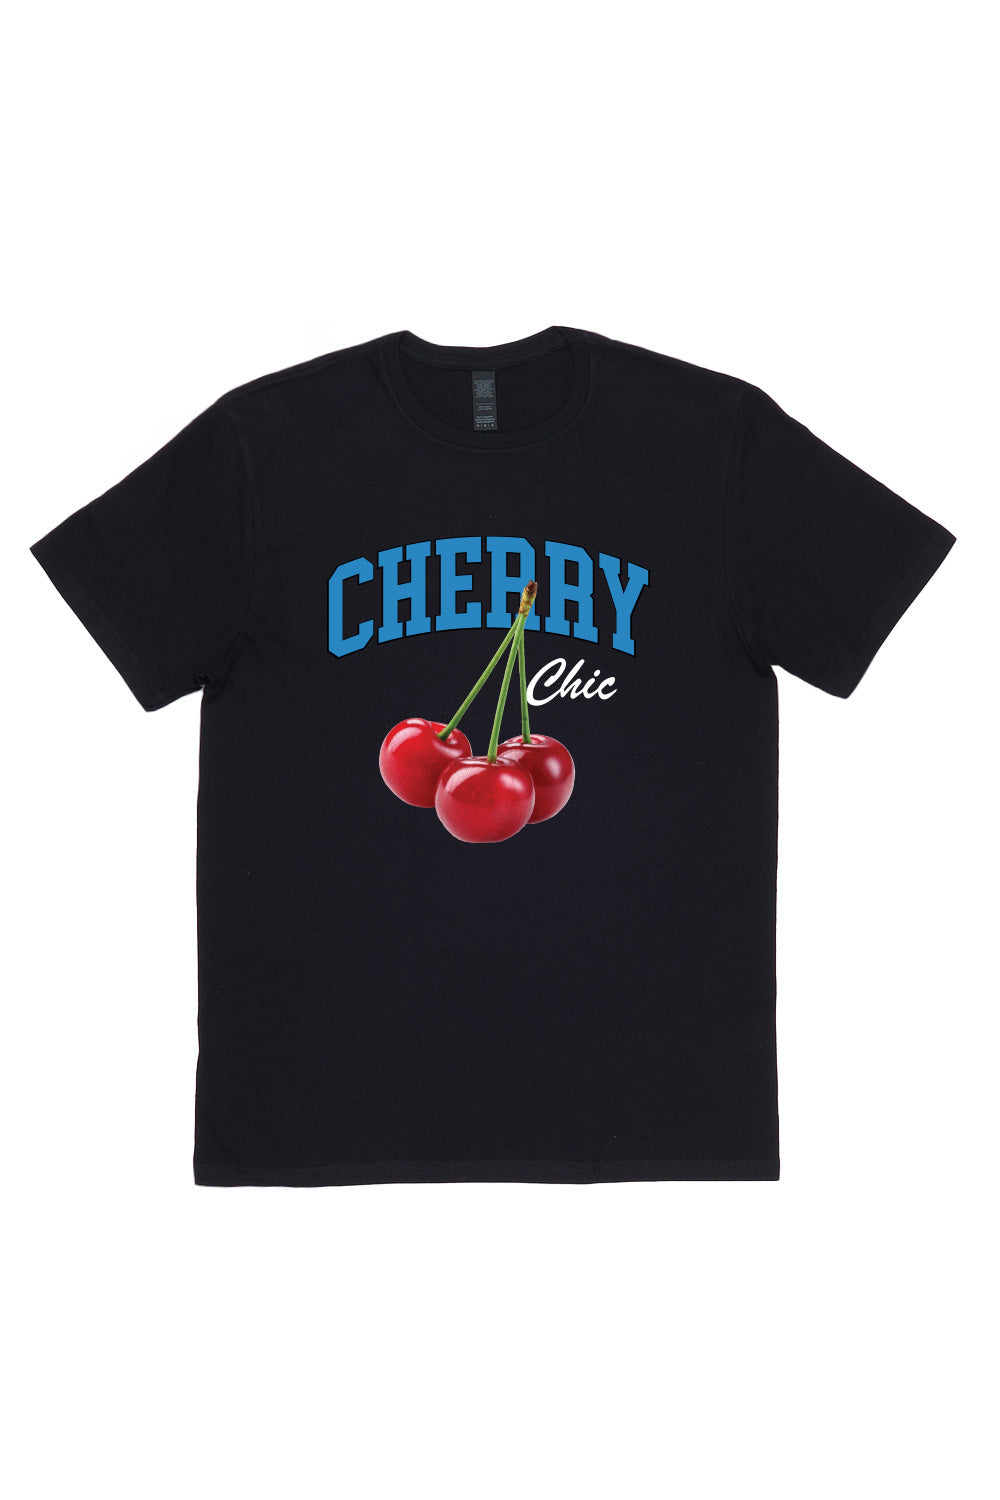 Cherry Chic T-Shirt